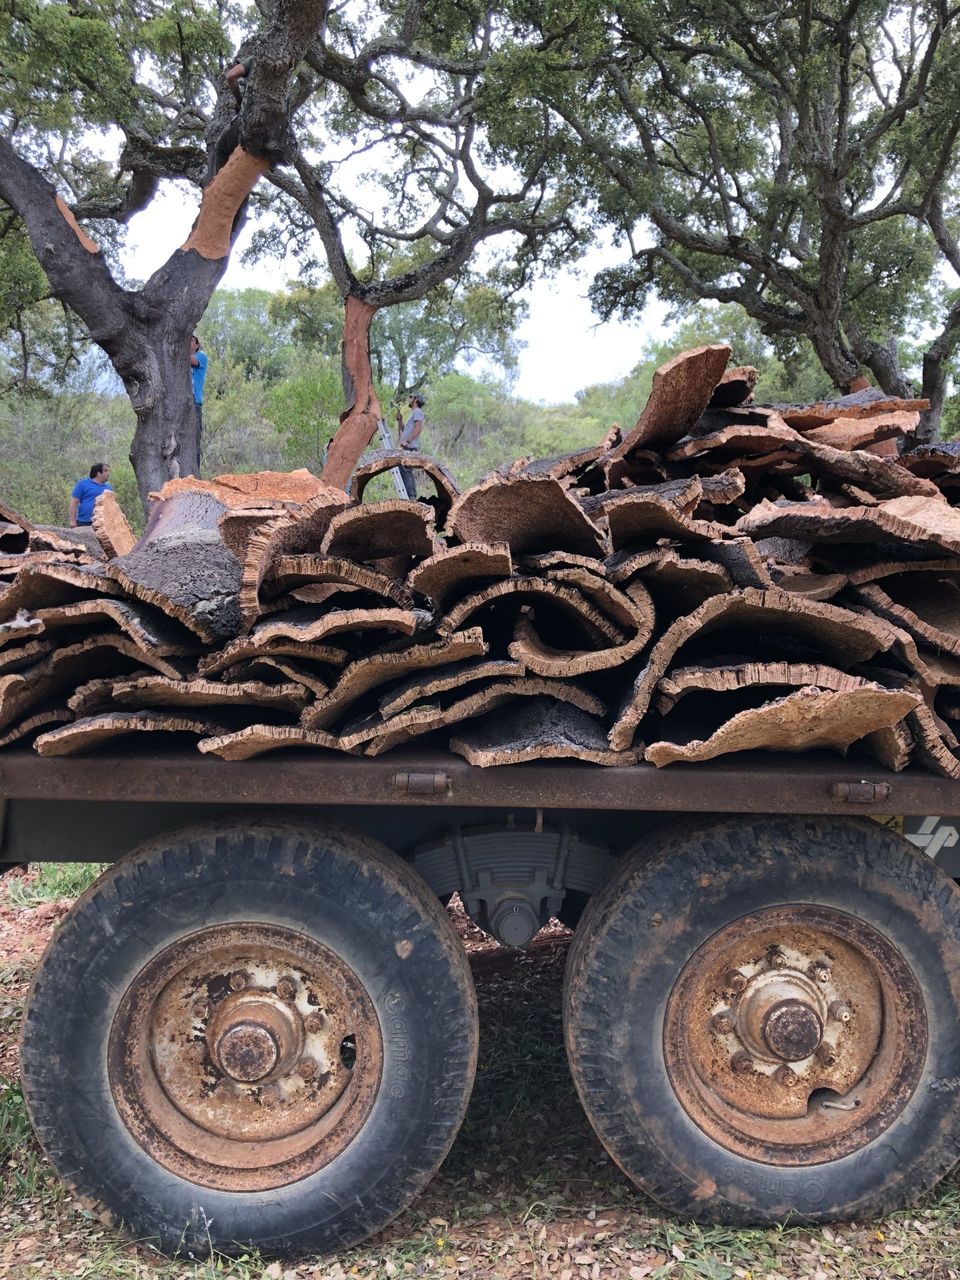 A truck full of cork bark